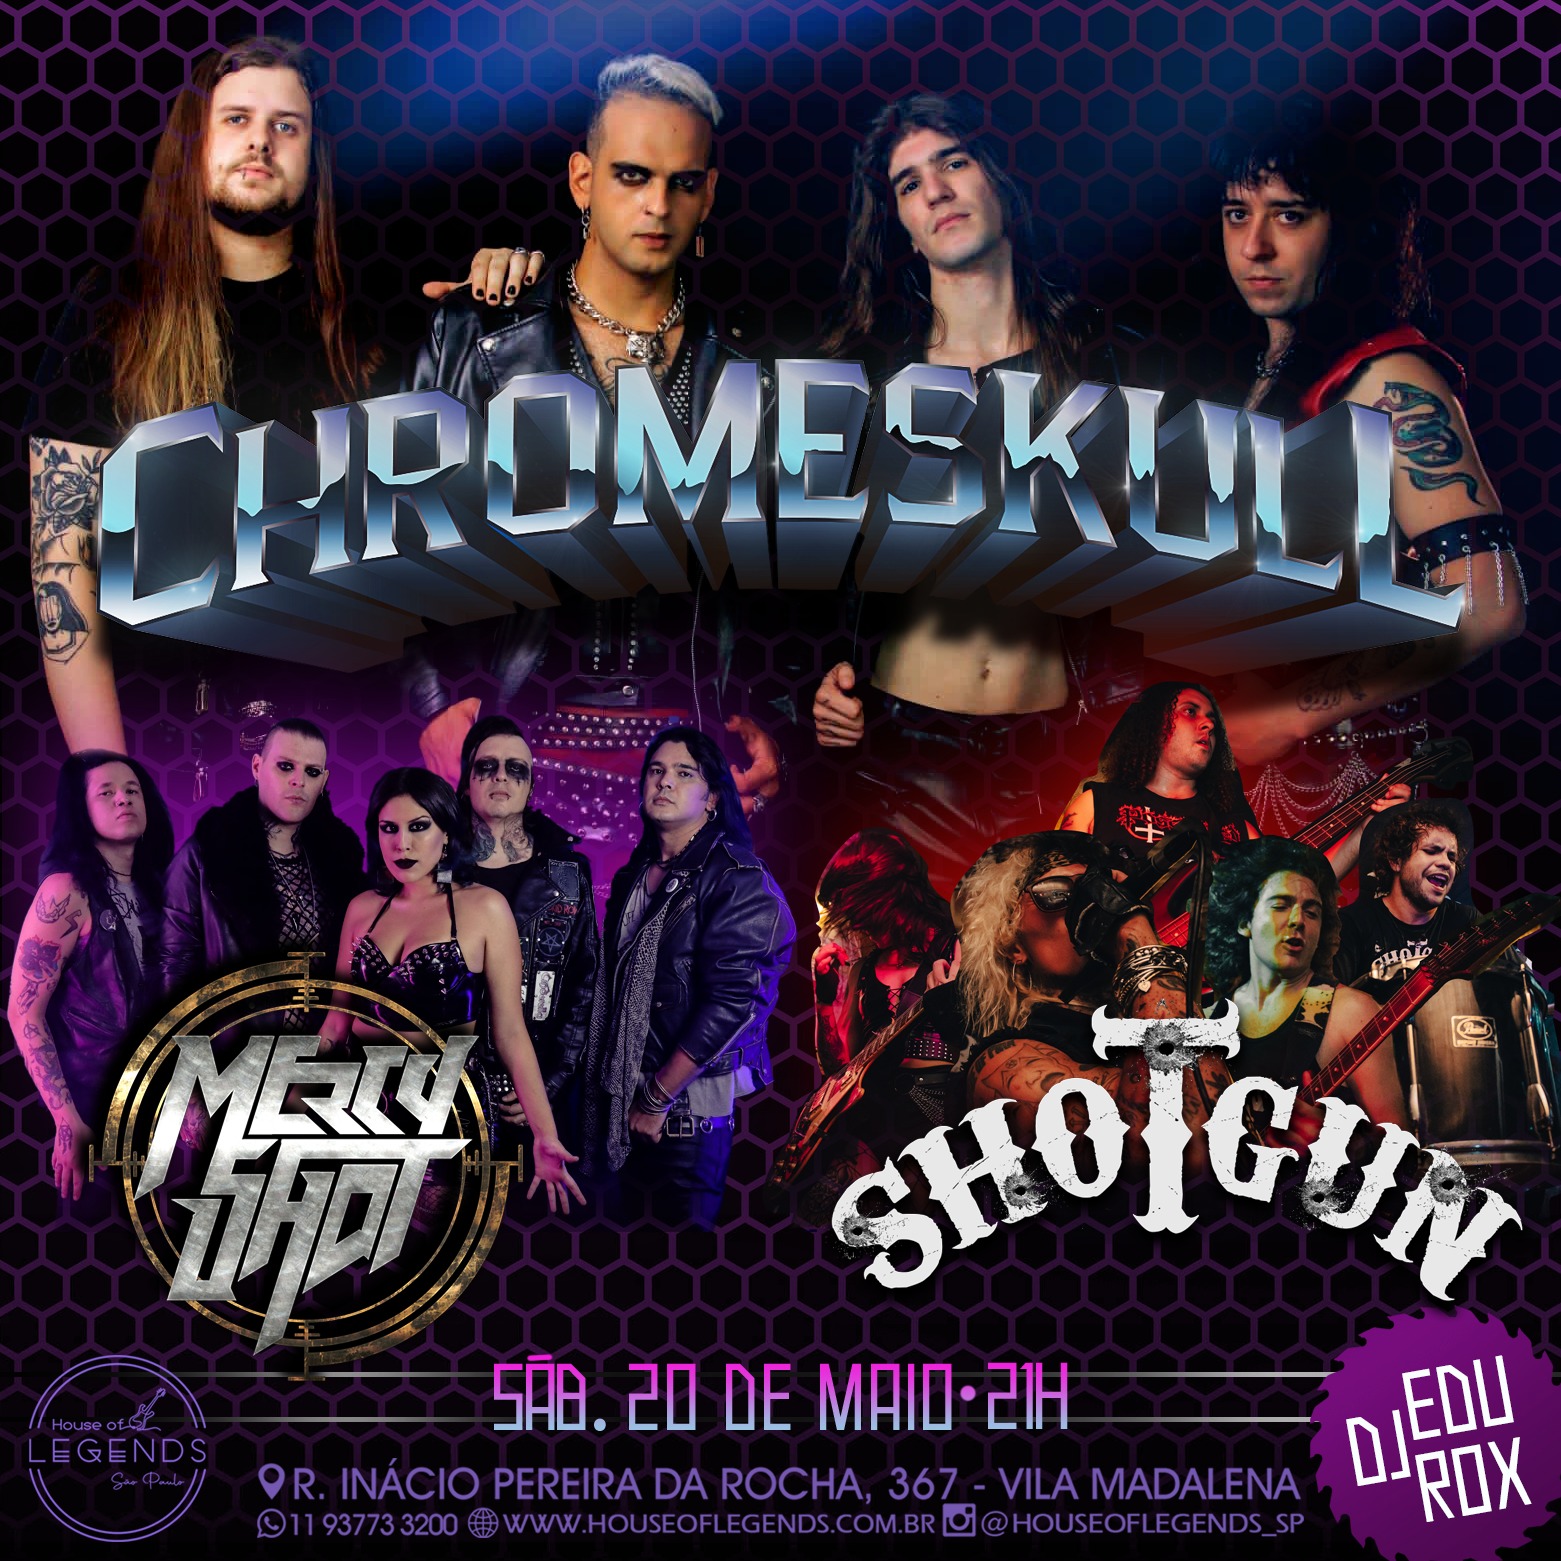 CHROMESKULL: Confirmados ao lado de Mercy Shot e Shotgun em São Paulo/SP, saiba mais!